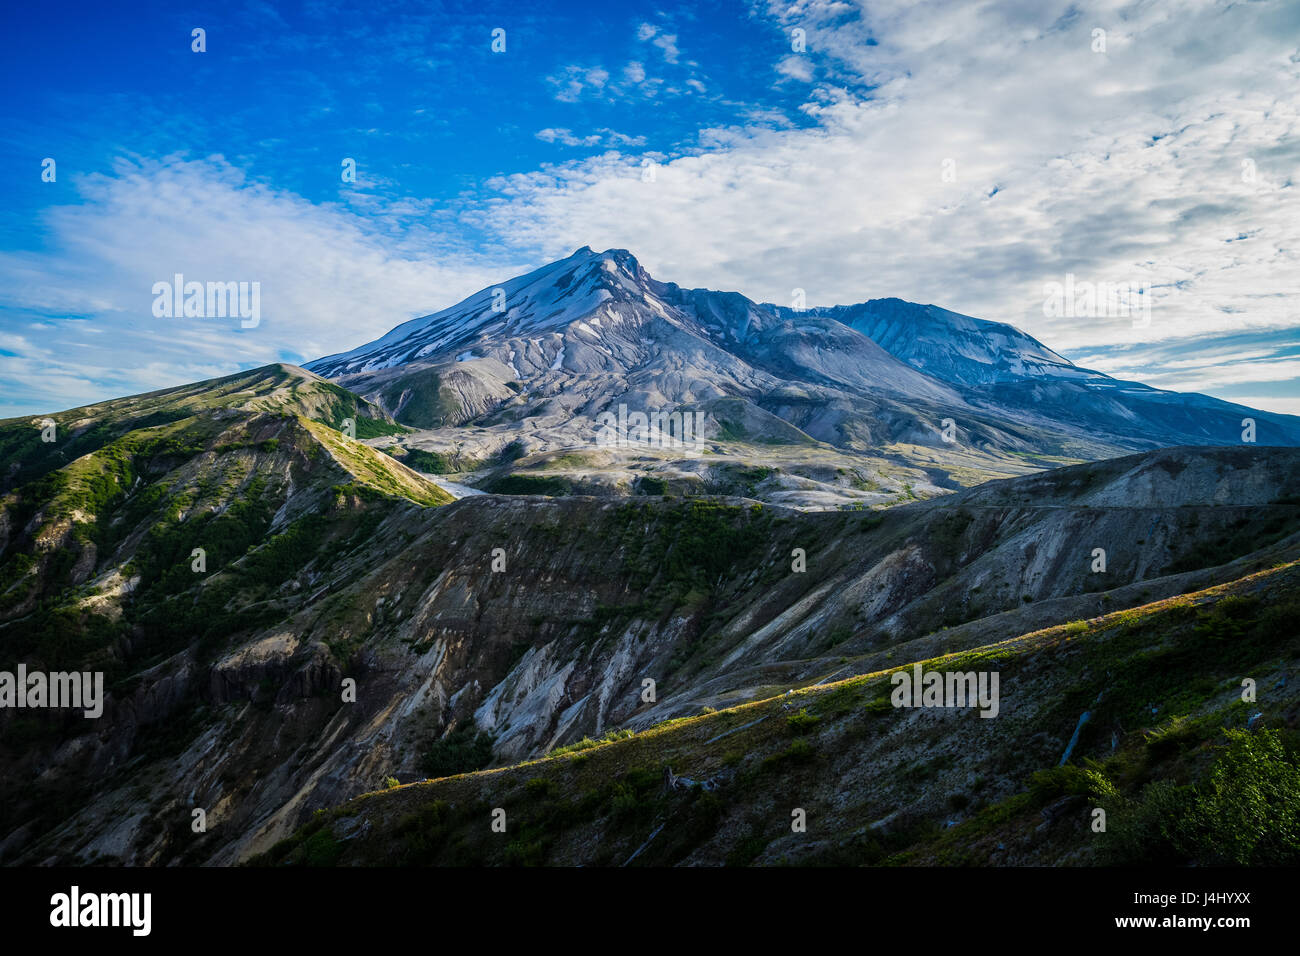 Vulkan Mount Saint Helens von der Nordseite mit Blast Zone Landschaft betrachtet Stockfoto